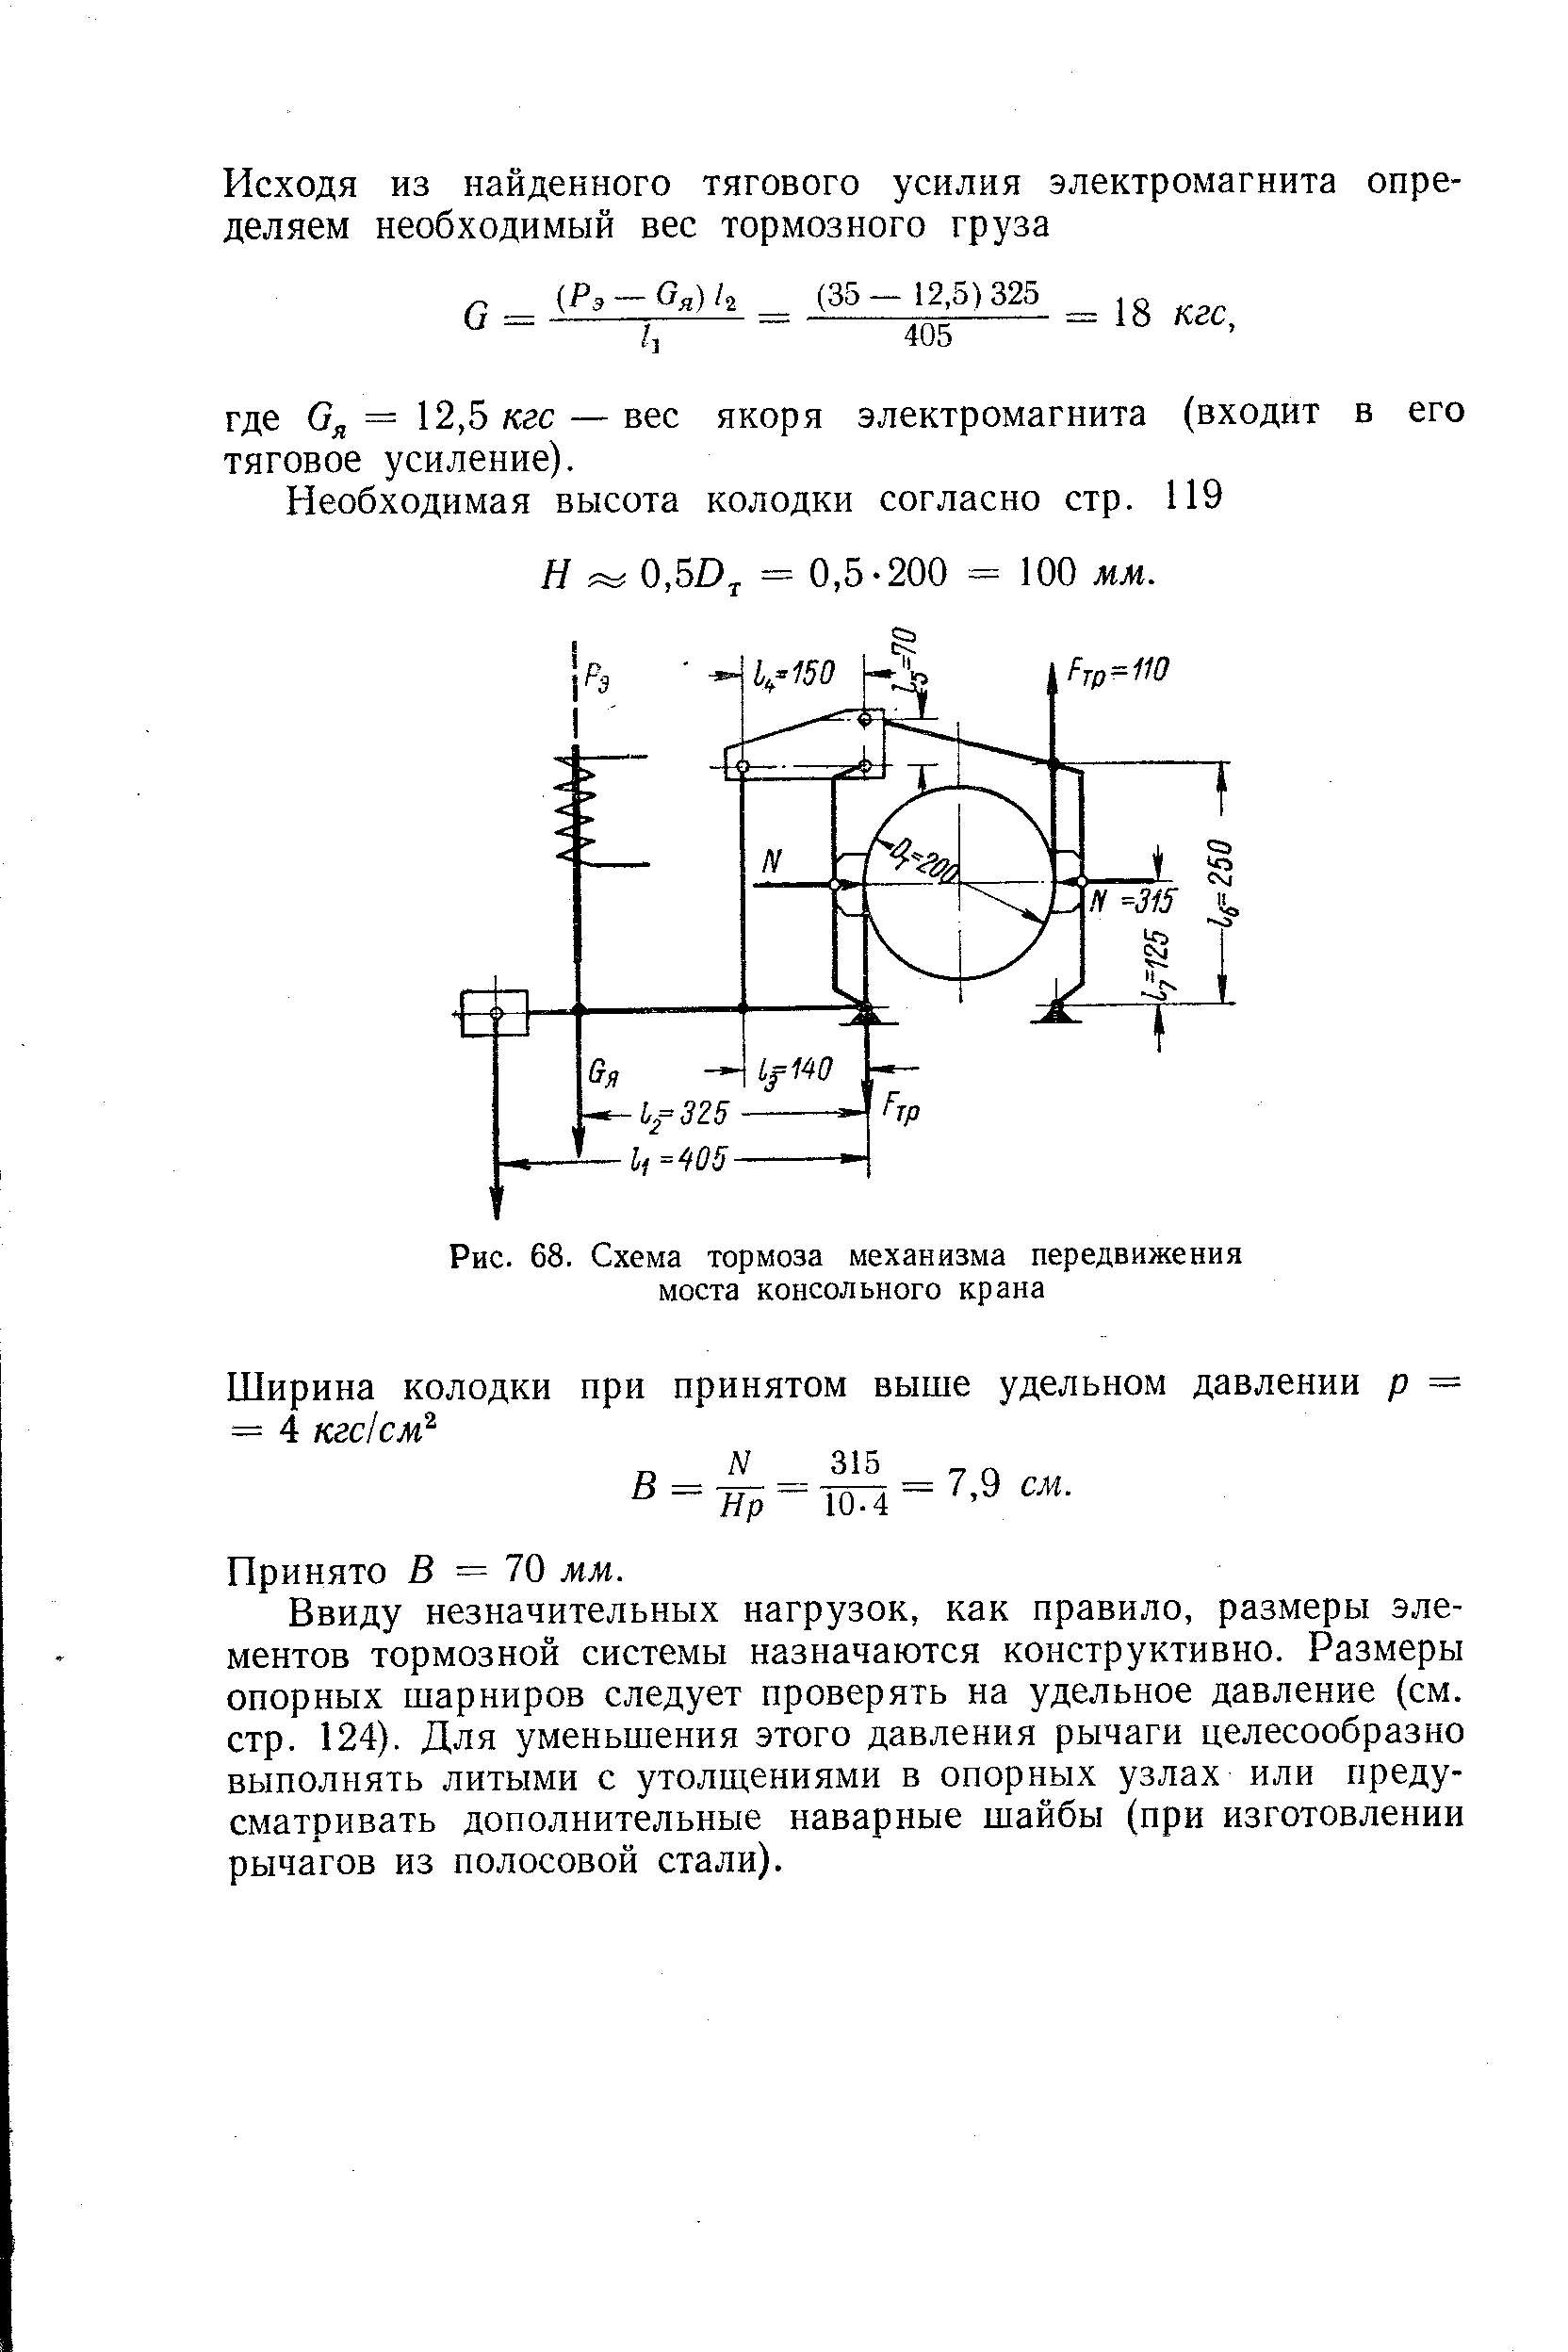 Рис. 68. Схема тормоза механизма передвижения моста консольного крана
